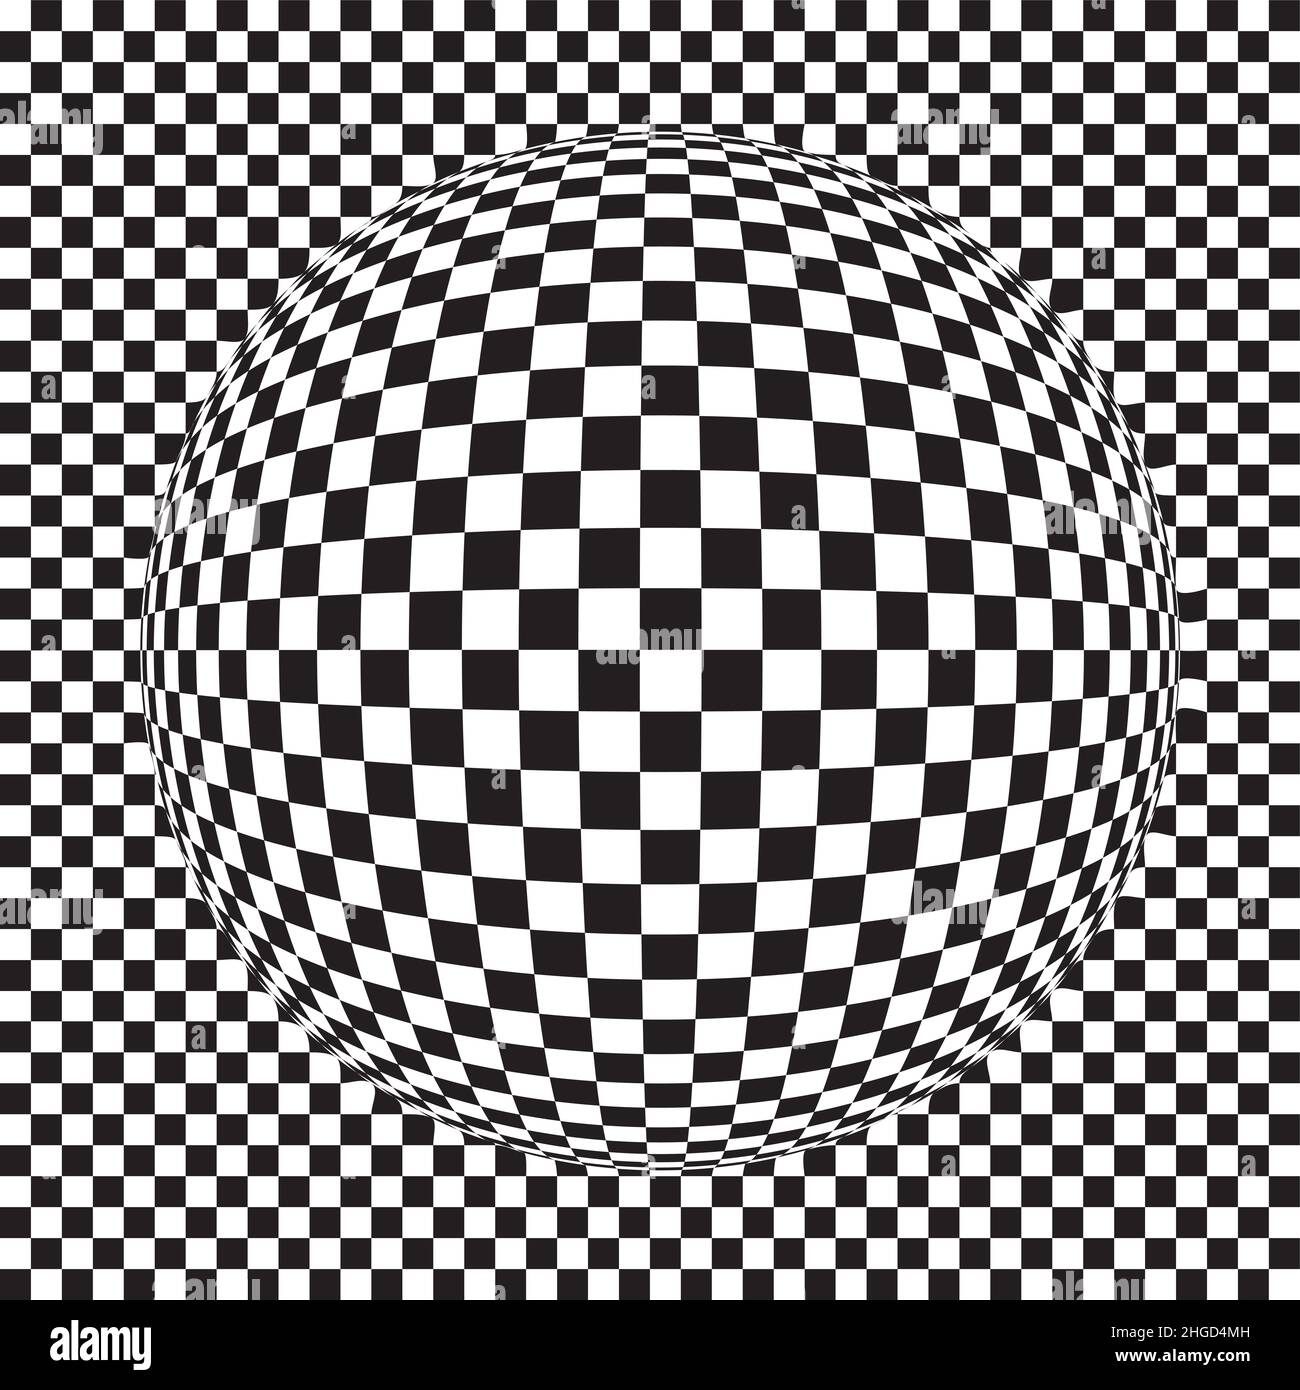 Quadrati sulla palla - illustrazione del disegno astratto quadrato - figura geometrica Foto Stock